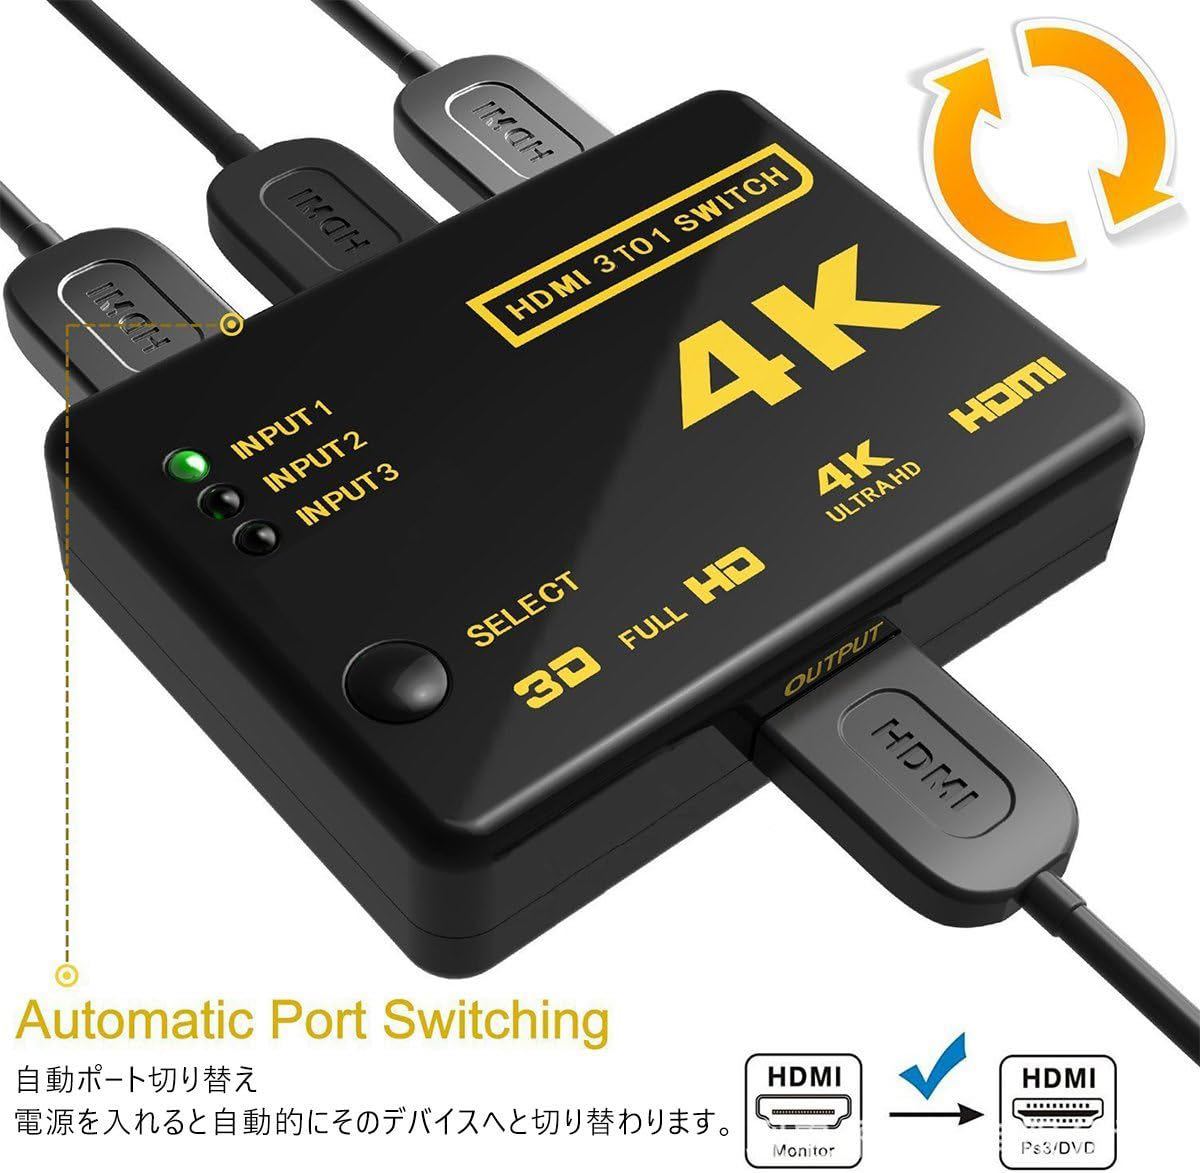 HDMI переключатель 4Kx2K HDMI дистрибьютор селектор 3 ввод 1 мощность позолоченный коннектор установка 1080p3D соответствует ( женский - мужской ) источник питания не необходимо 